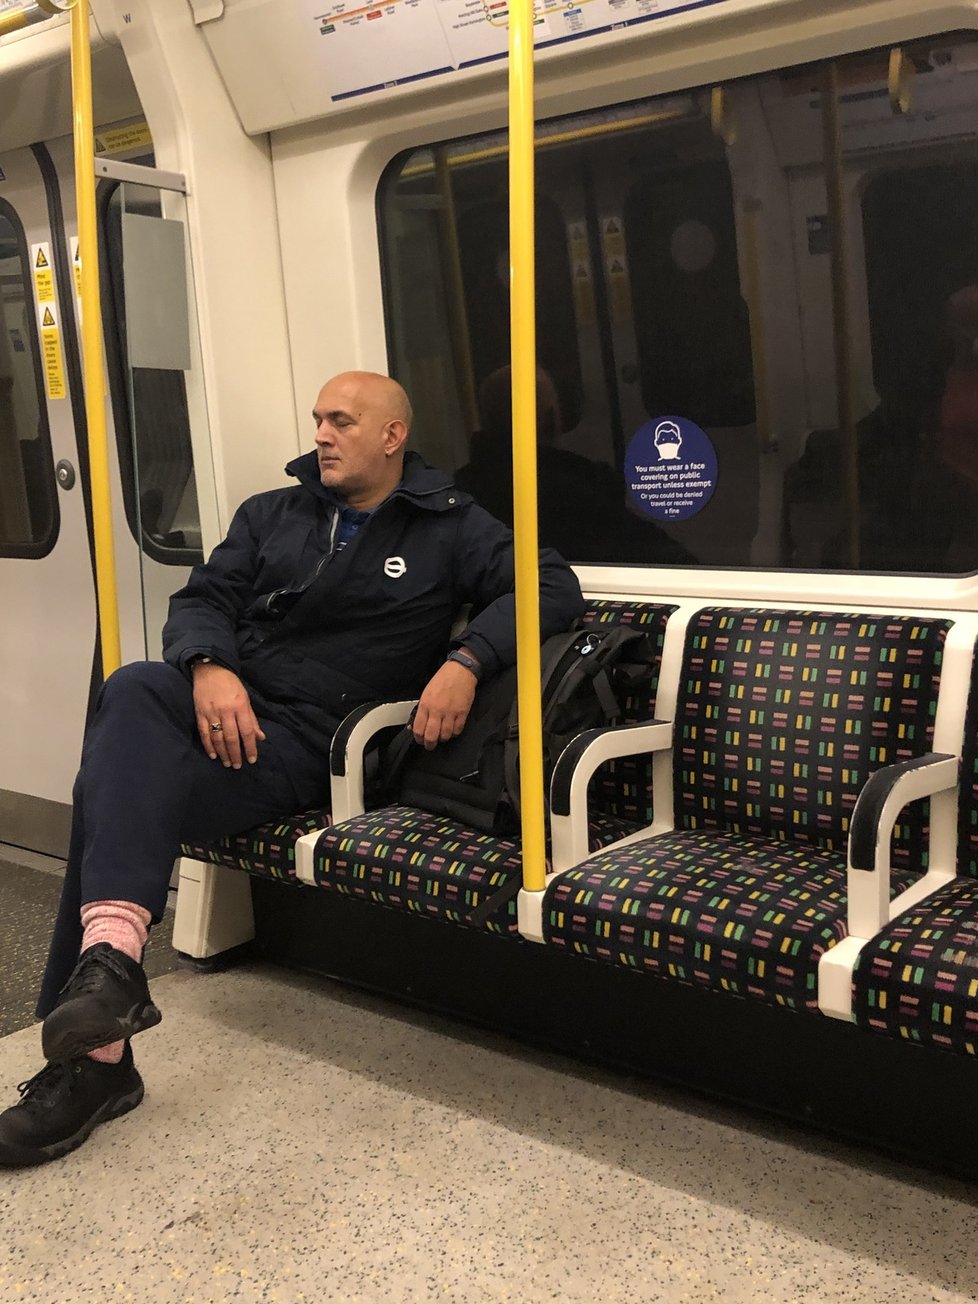 Dopolední cesta metrem - lidé nemusí v hromadné dopravě nosit roušky, ačkoliv všude je doporučení si je nasadit